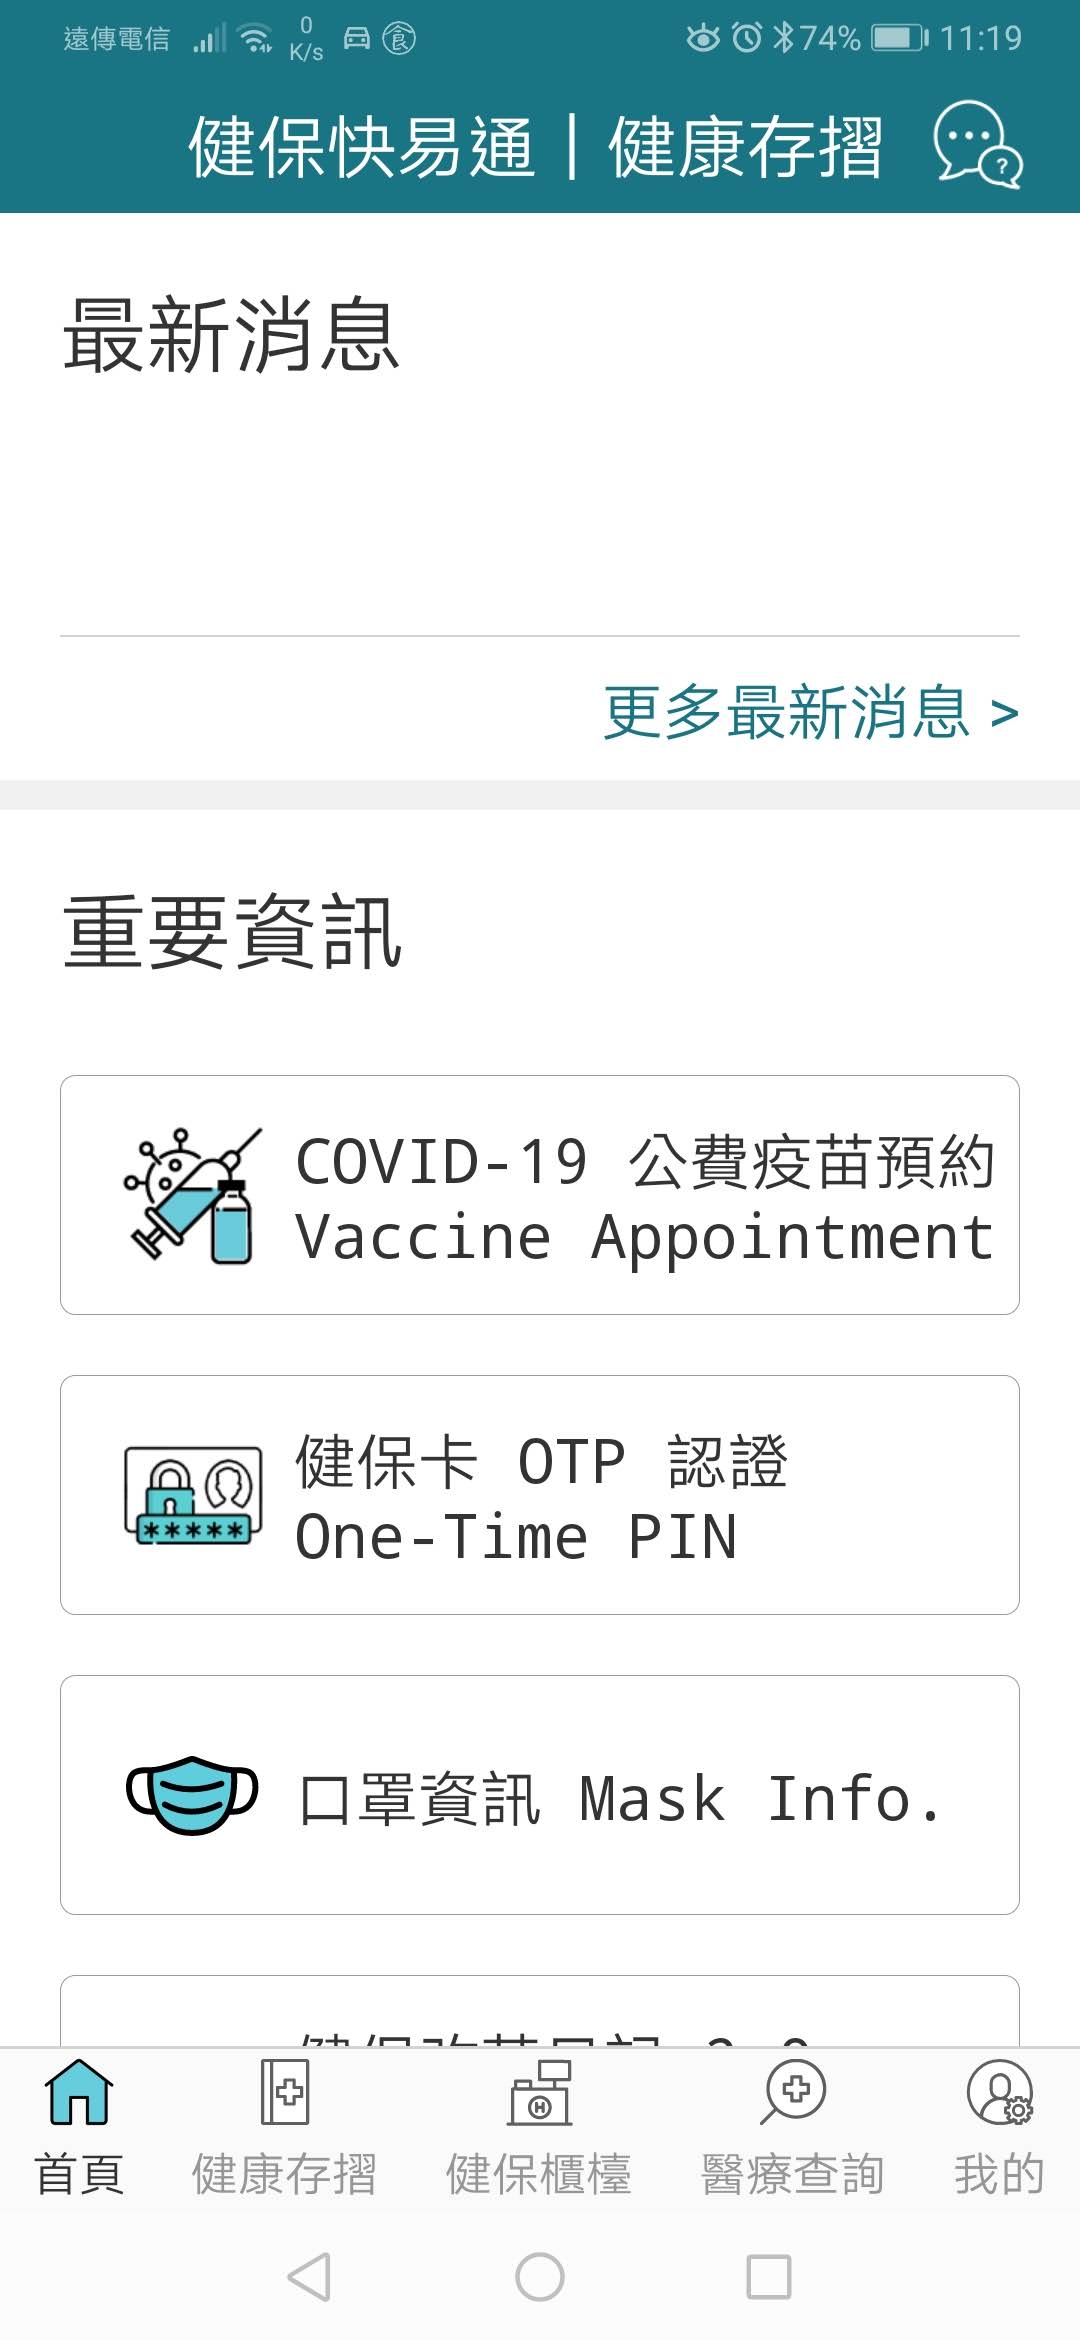 COVID-19疫苗預約平台|意願登記教學\如何預約施打地點時間\1922